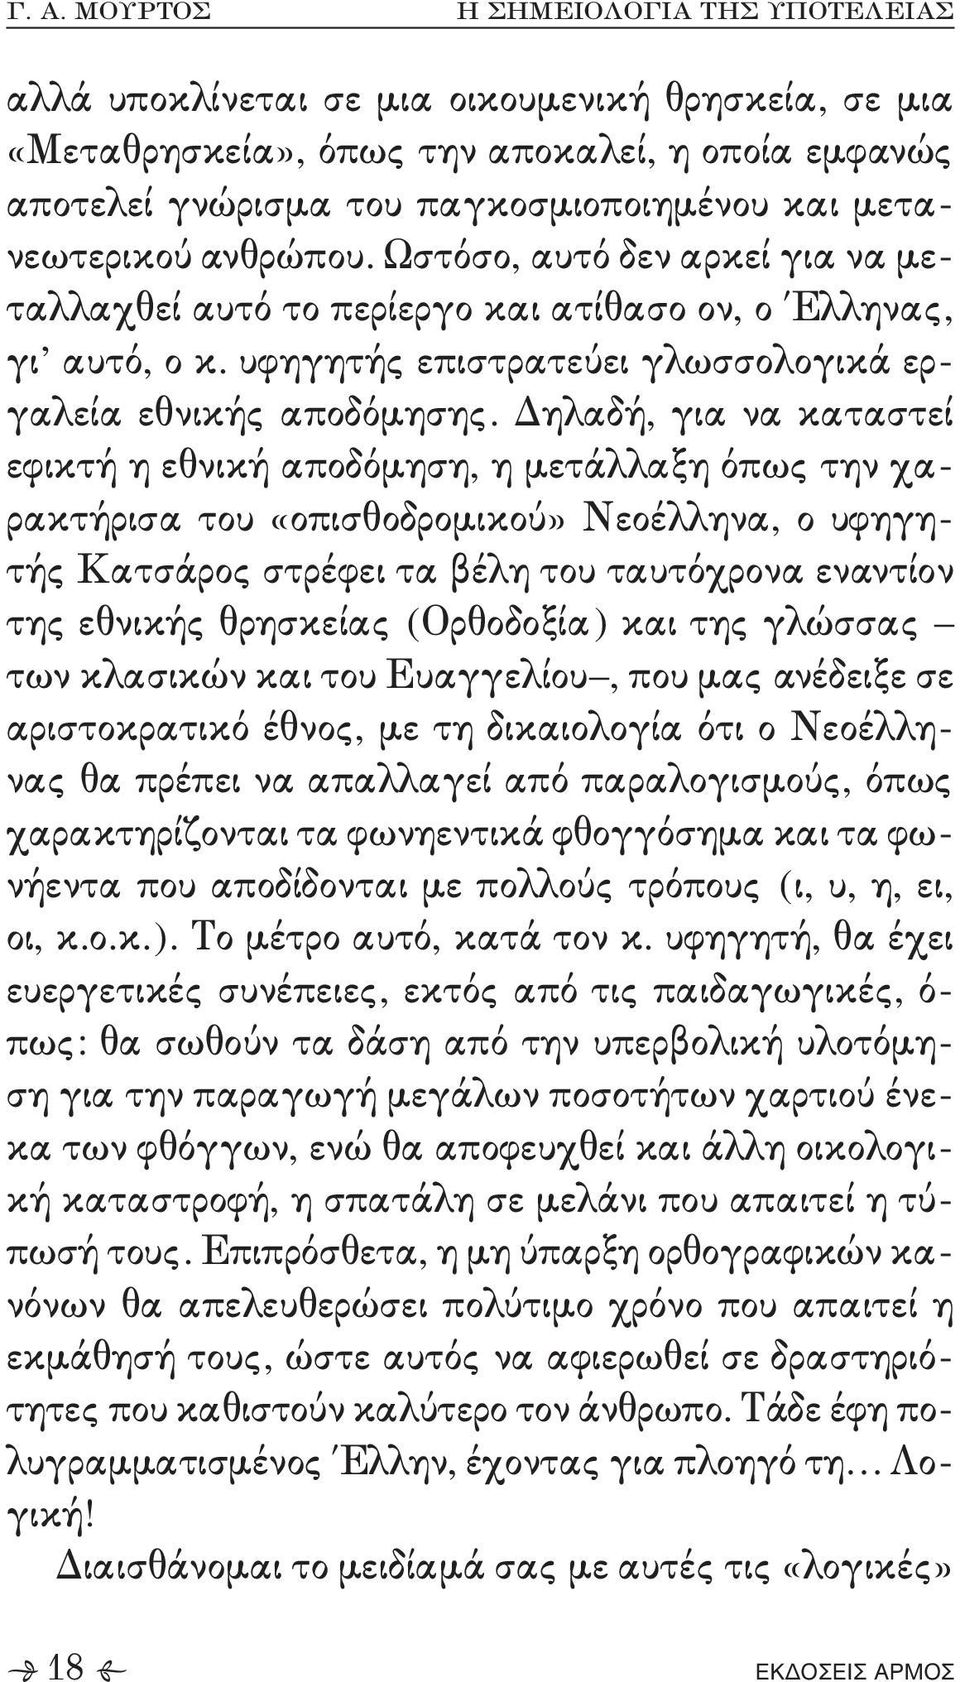 μετάλλαξη όπως την χα, ρακτήρισα του «οπισθοδρομικού» Νεοέλληνα+ ο υφηγη, τής Κατσάρος στρέφει τα βέλη του ταυτόχρονα εναντίον της εθνικής θρησκείας 'Ορθοδοξία( και της γλώσσας των κλασικών και του